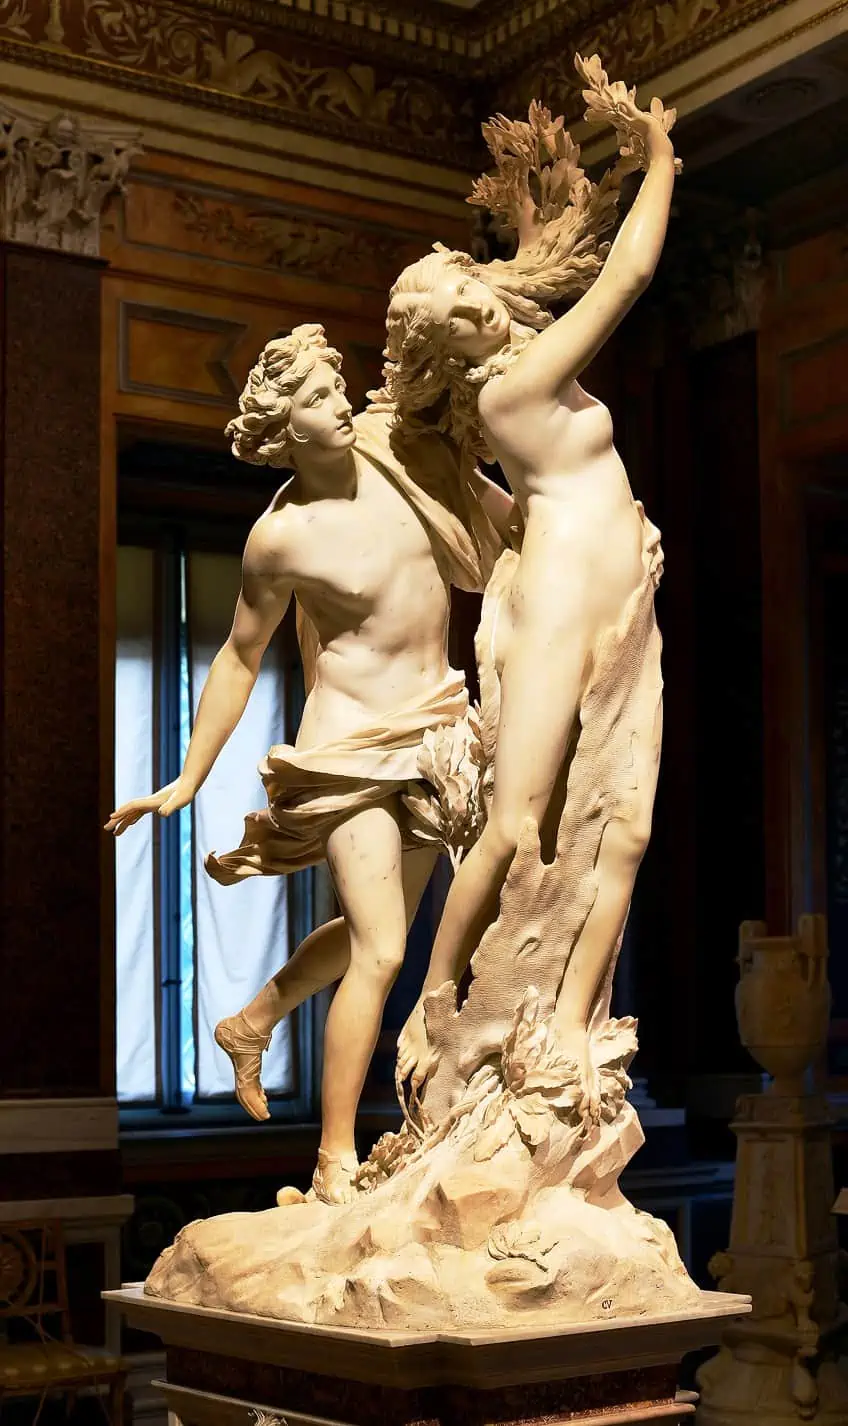 Popular Sculptures of the Renaissance